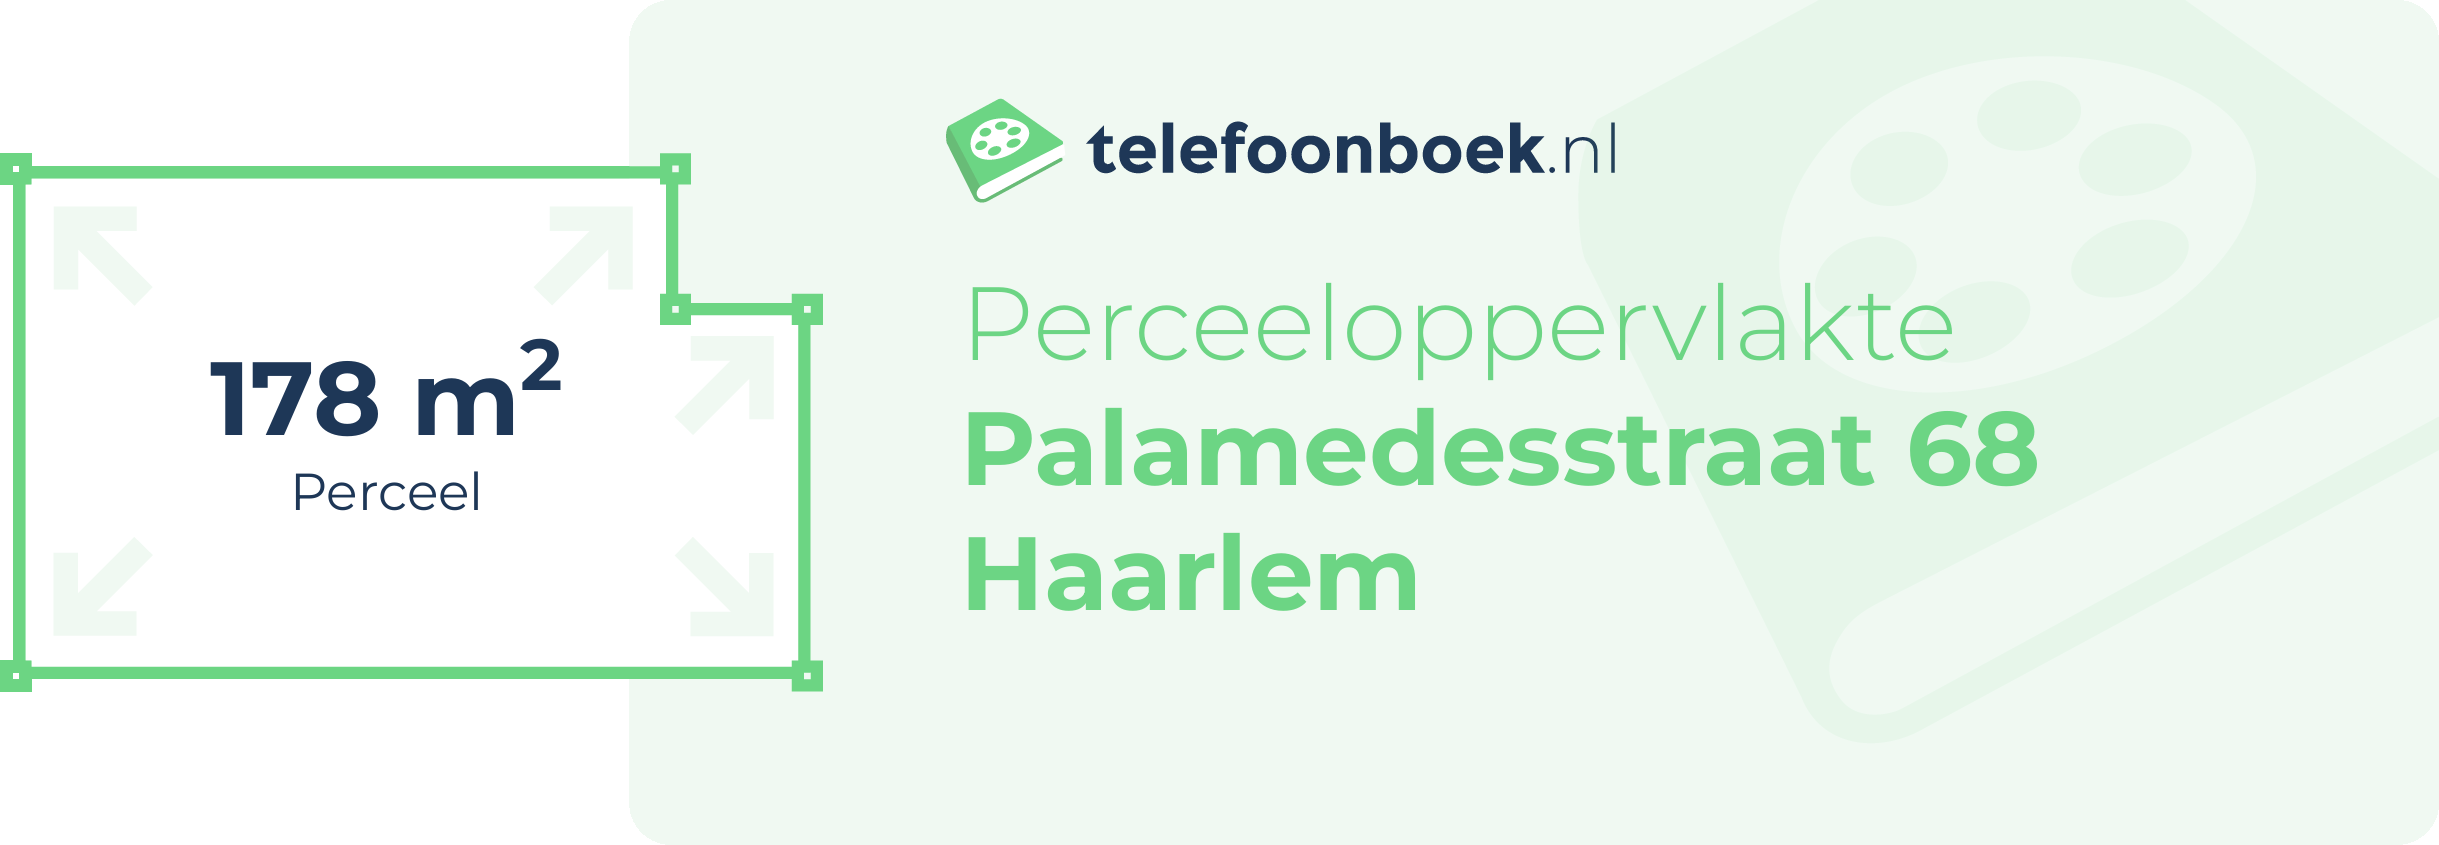 Perceeloppervlakte Palamedesstraat 68 Haarlem